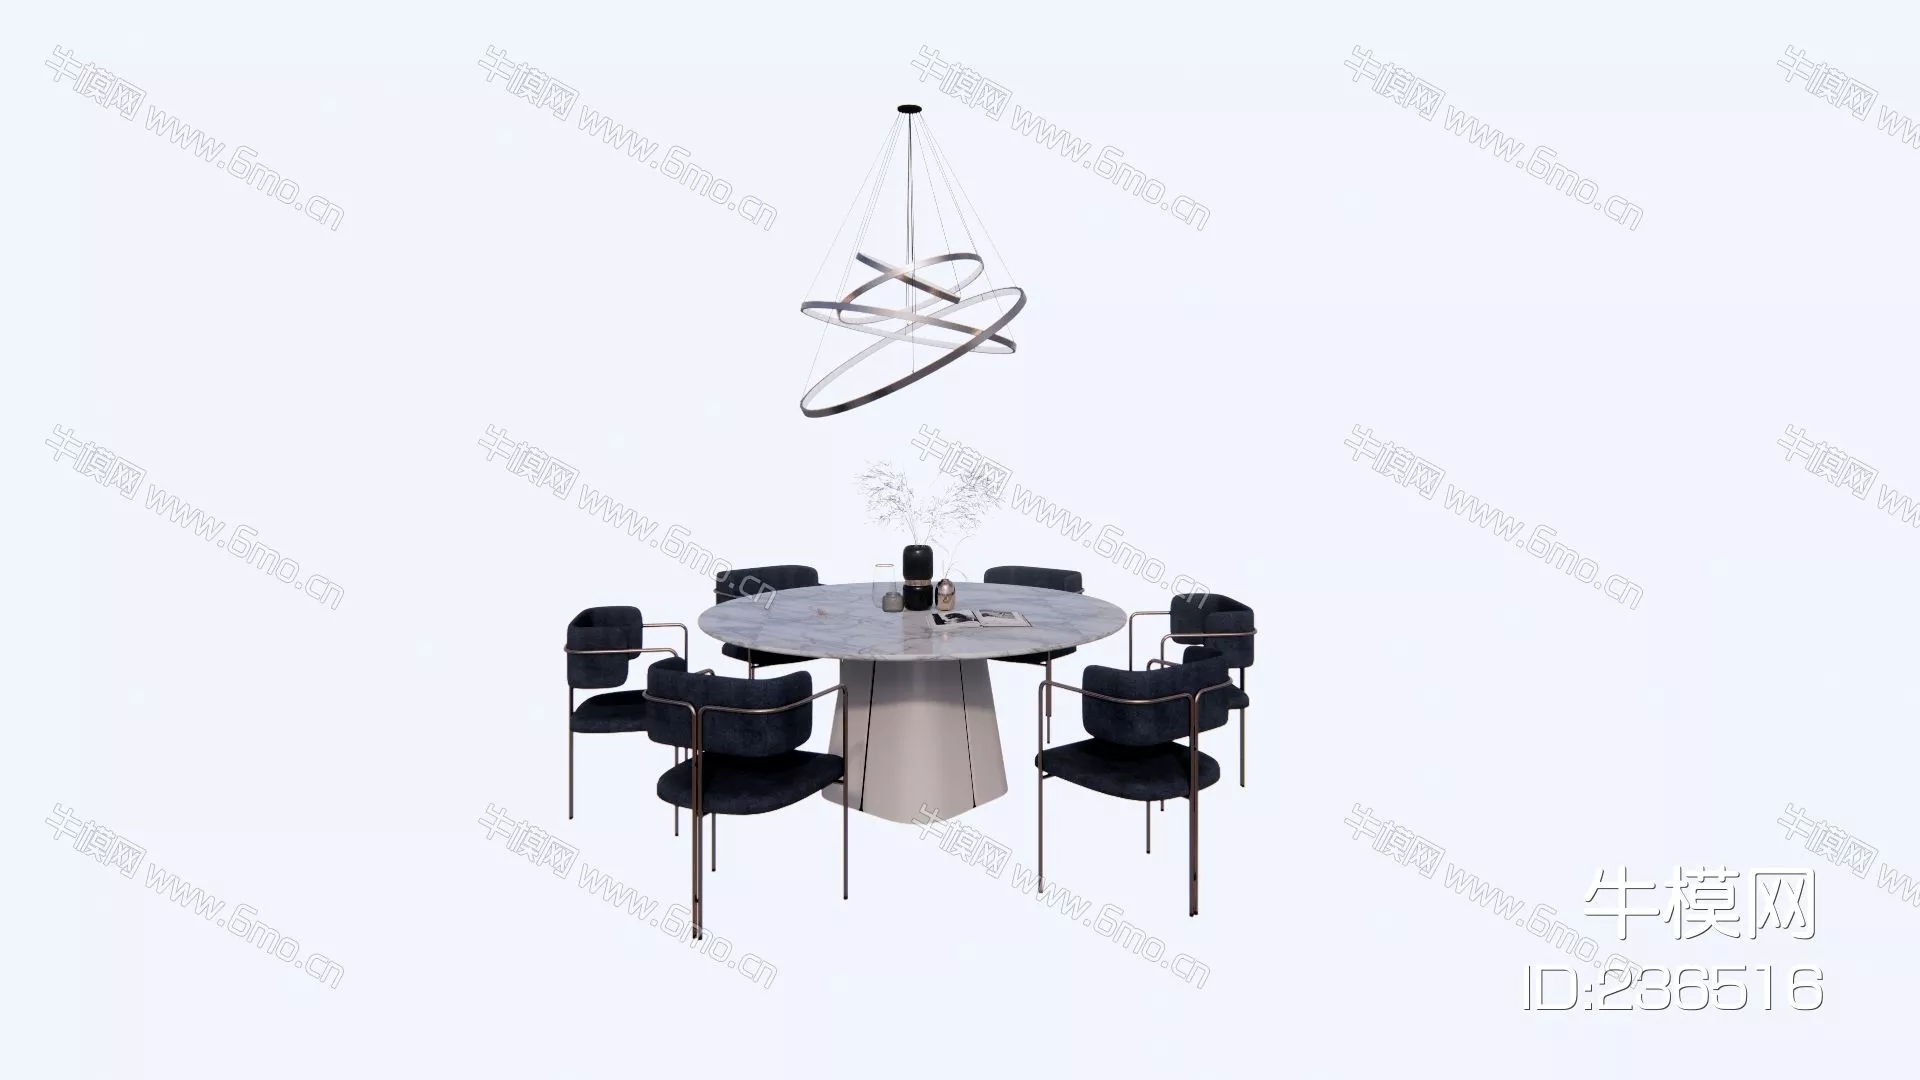 MODERN DINING TABLE SET - SKETCHUP 3D MODEL - ENSCAPE - 236516